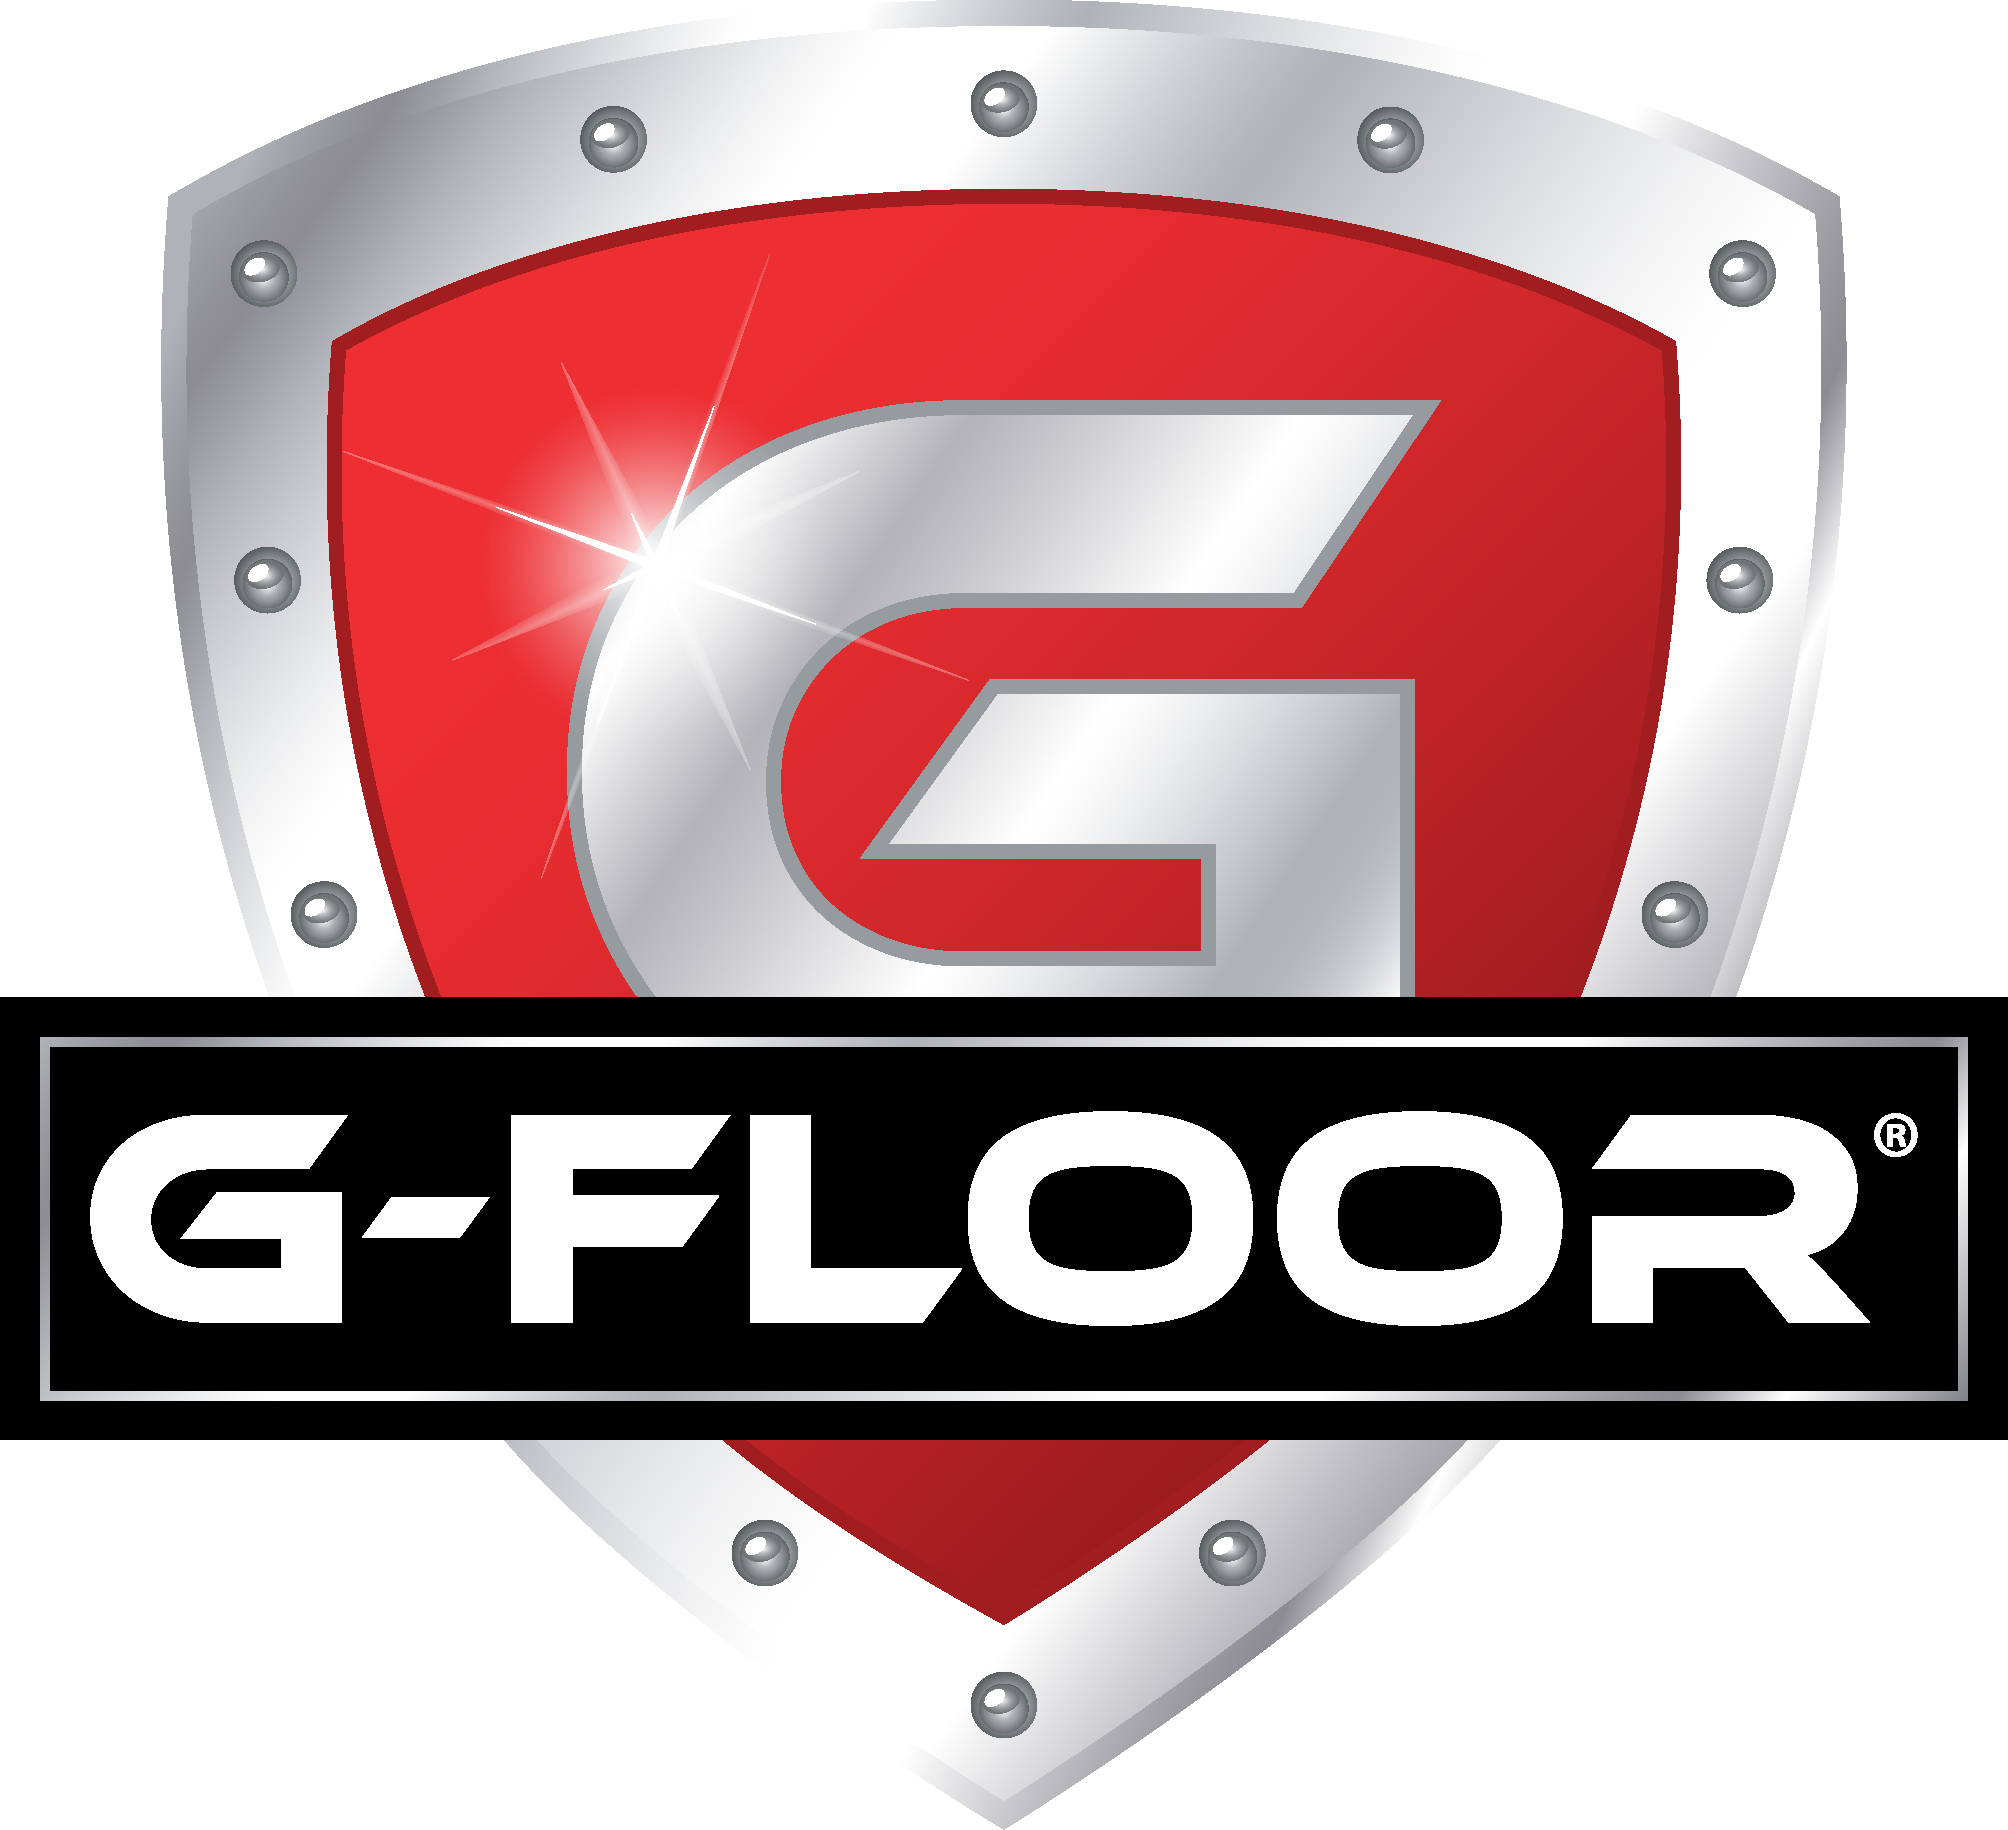 G-Floor